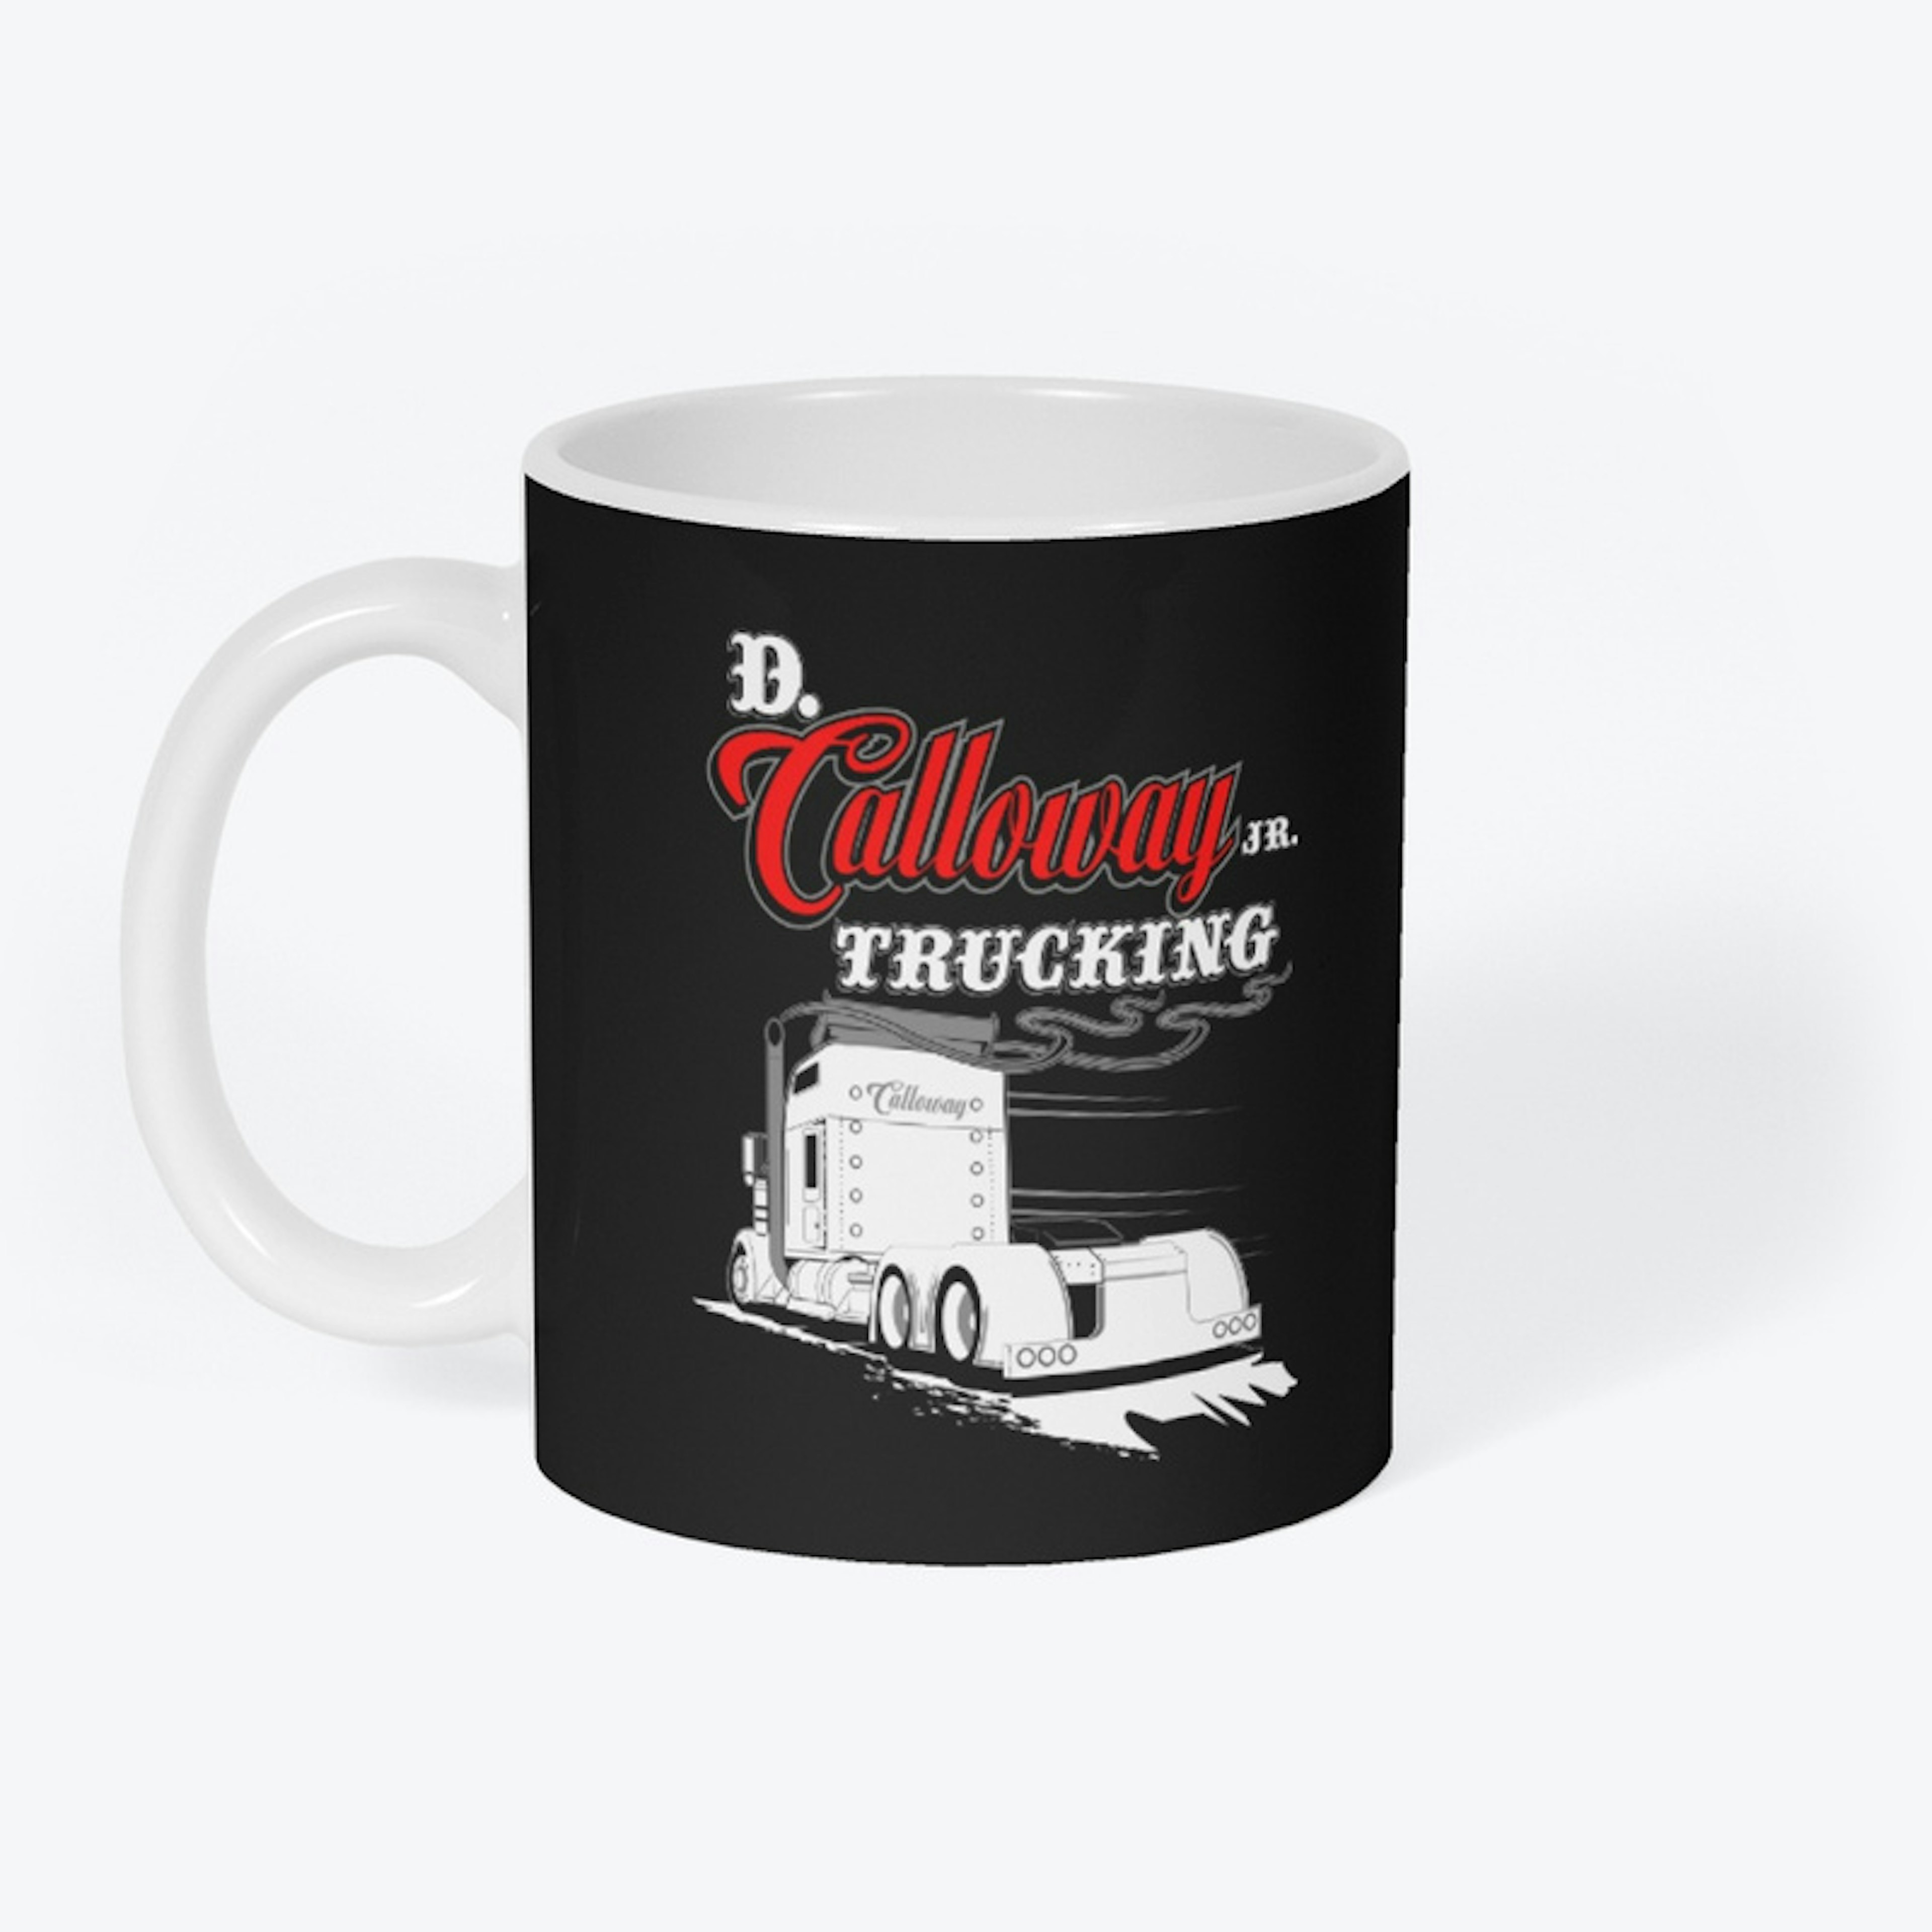 D. Calloway Jr. Trucking